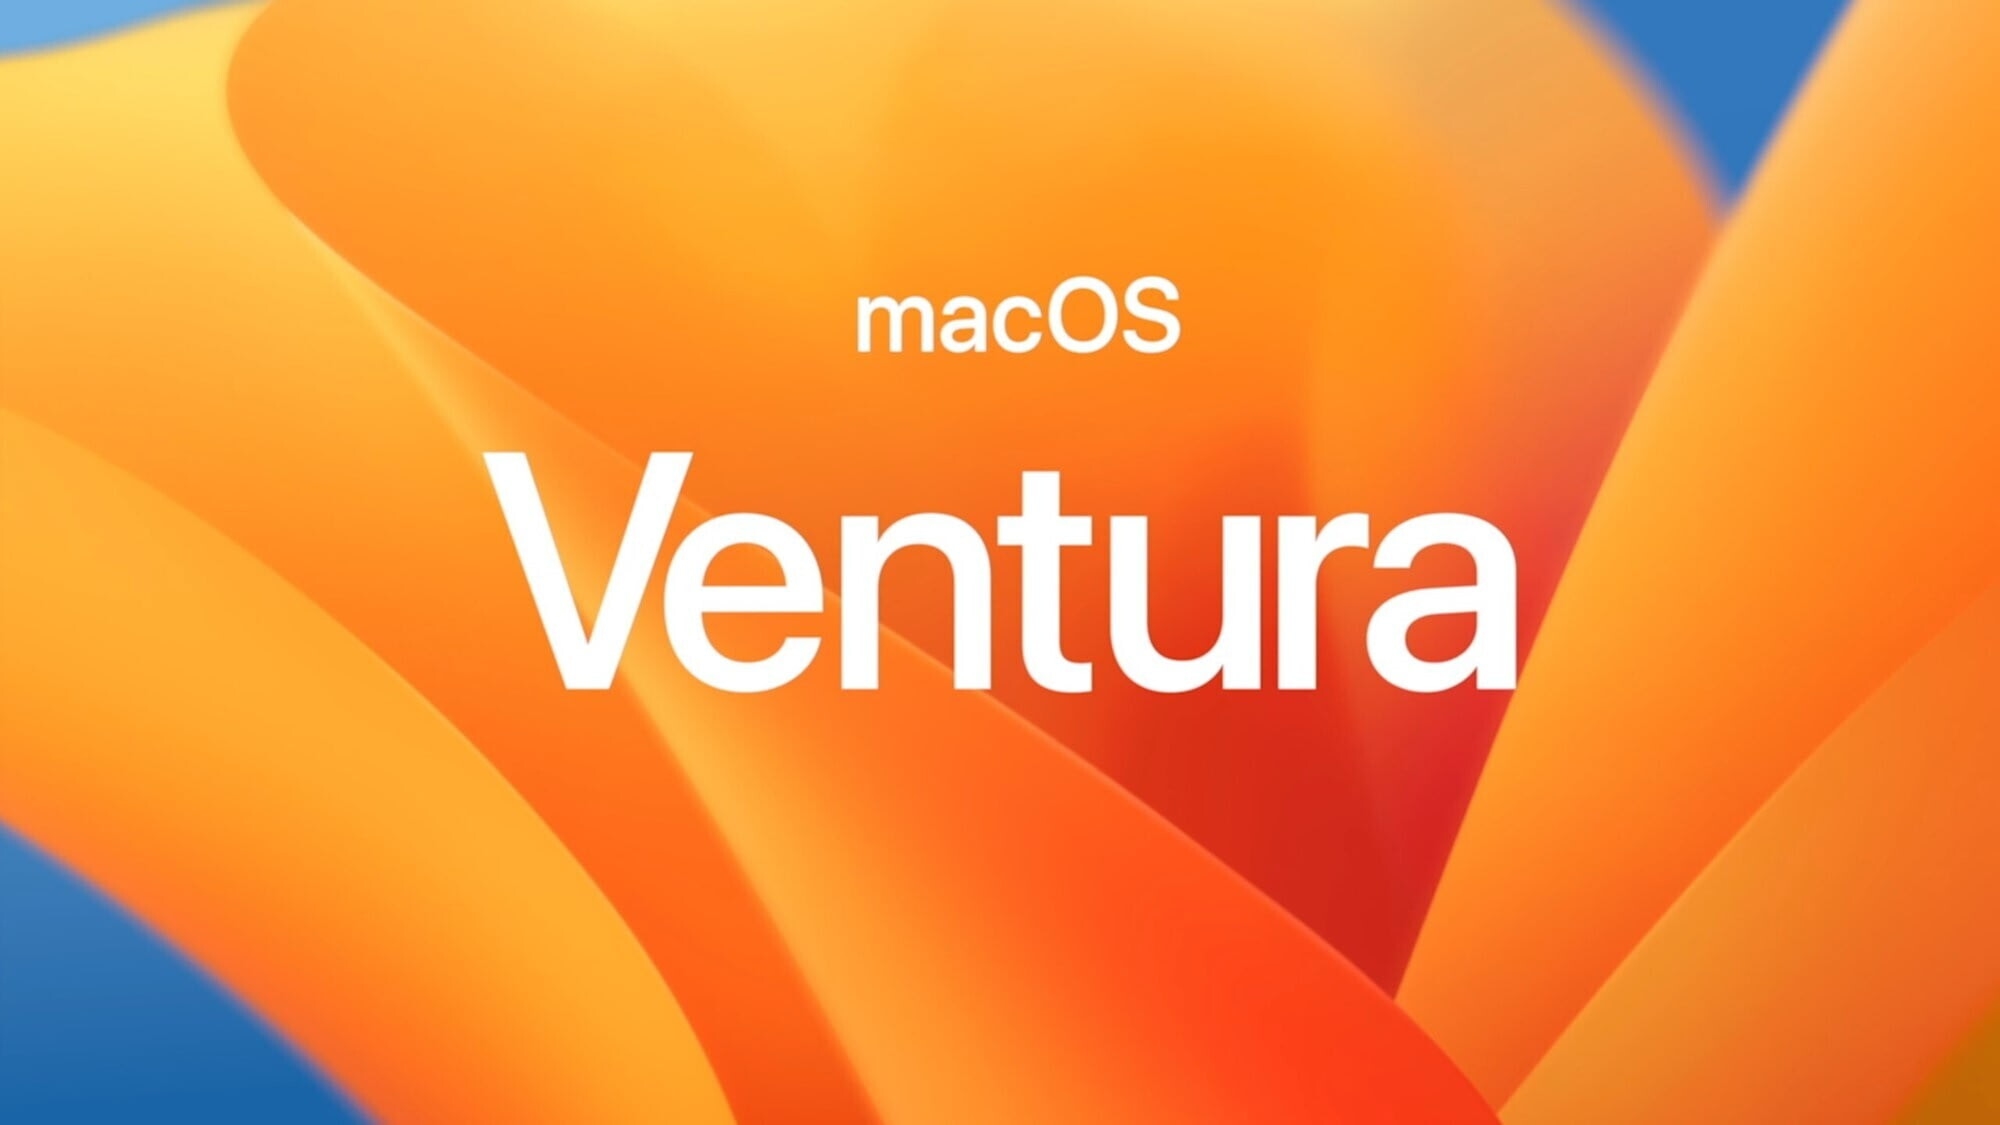 Apple випустила macOS Ventura 13.4: оновлений розділ "Спорт" в Apple News і робота над помилками